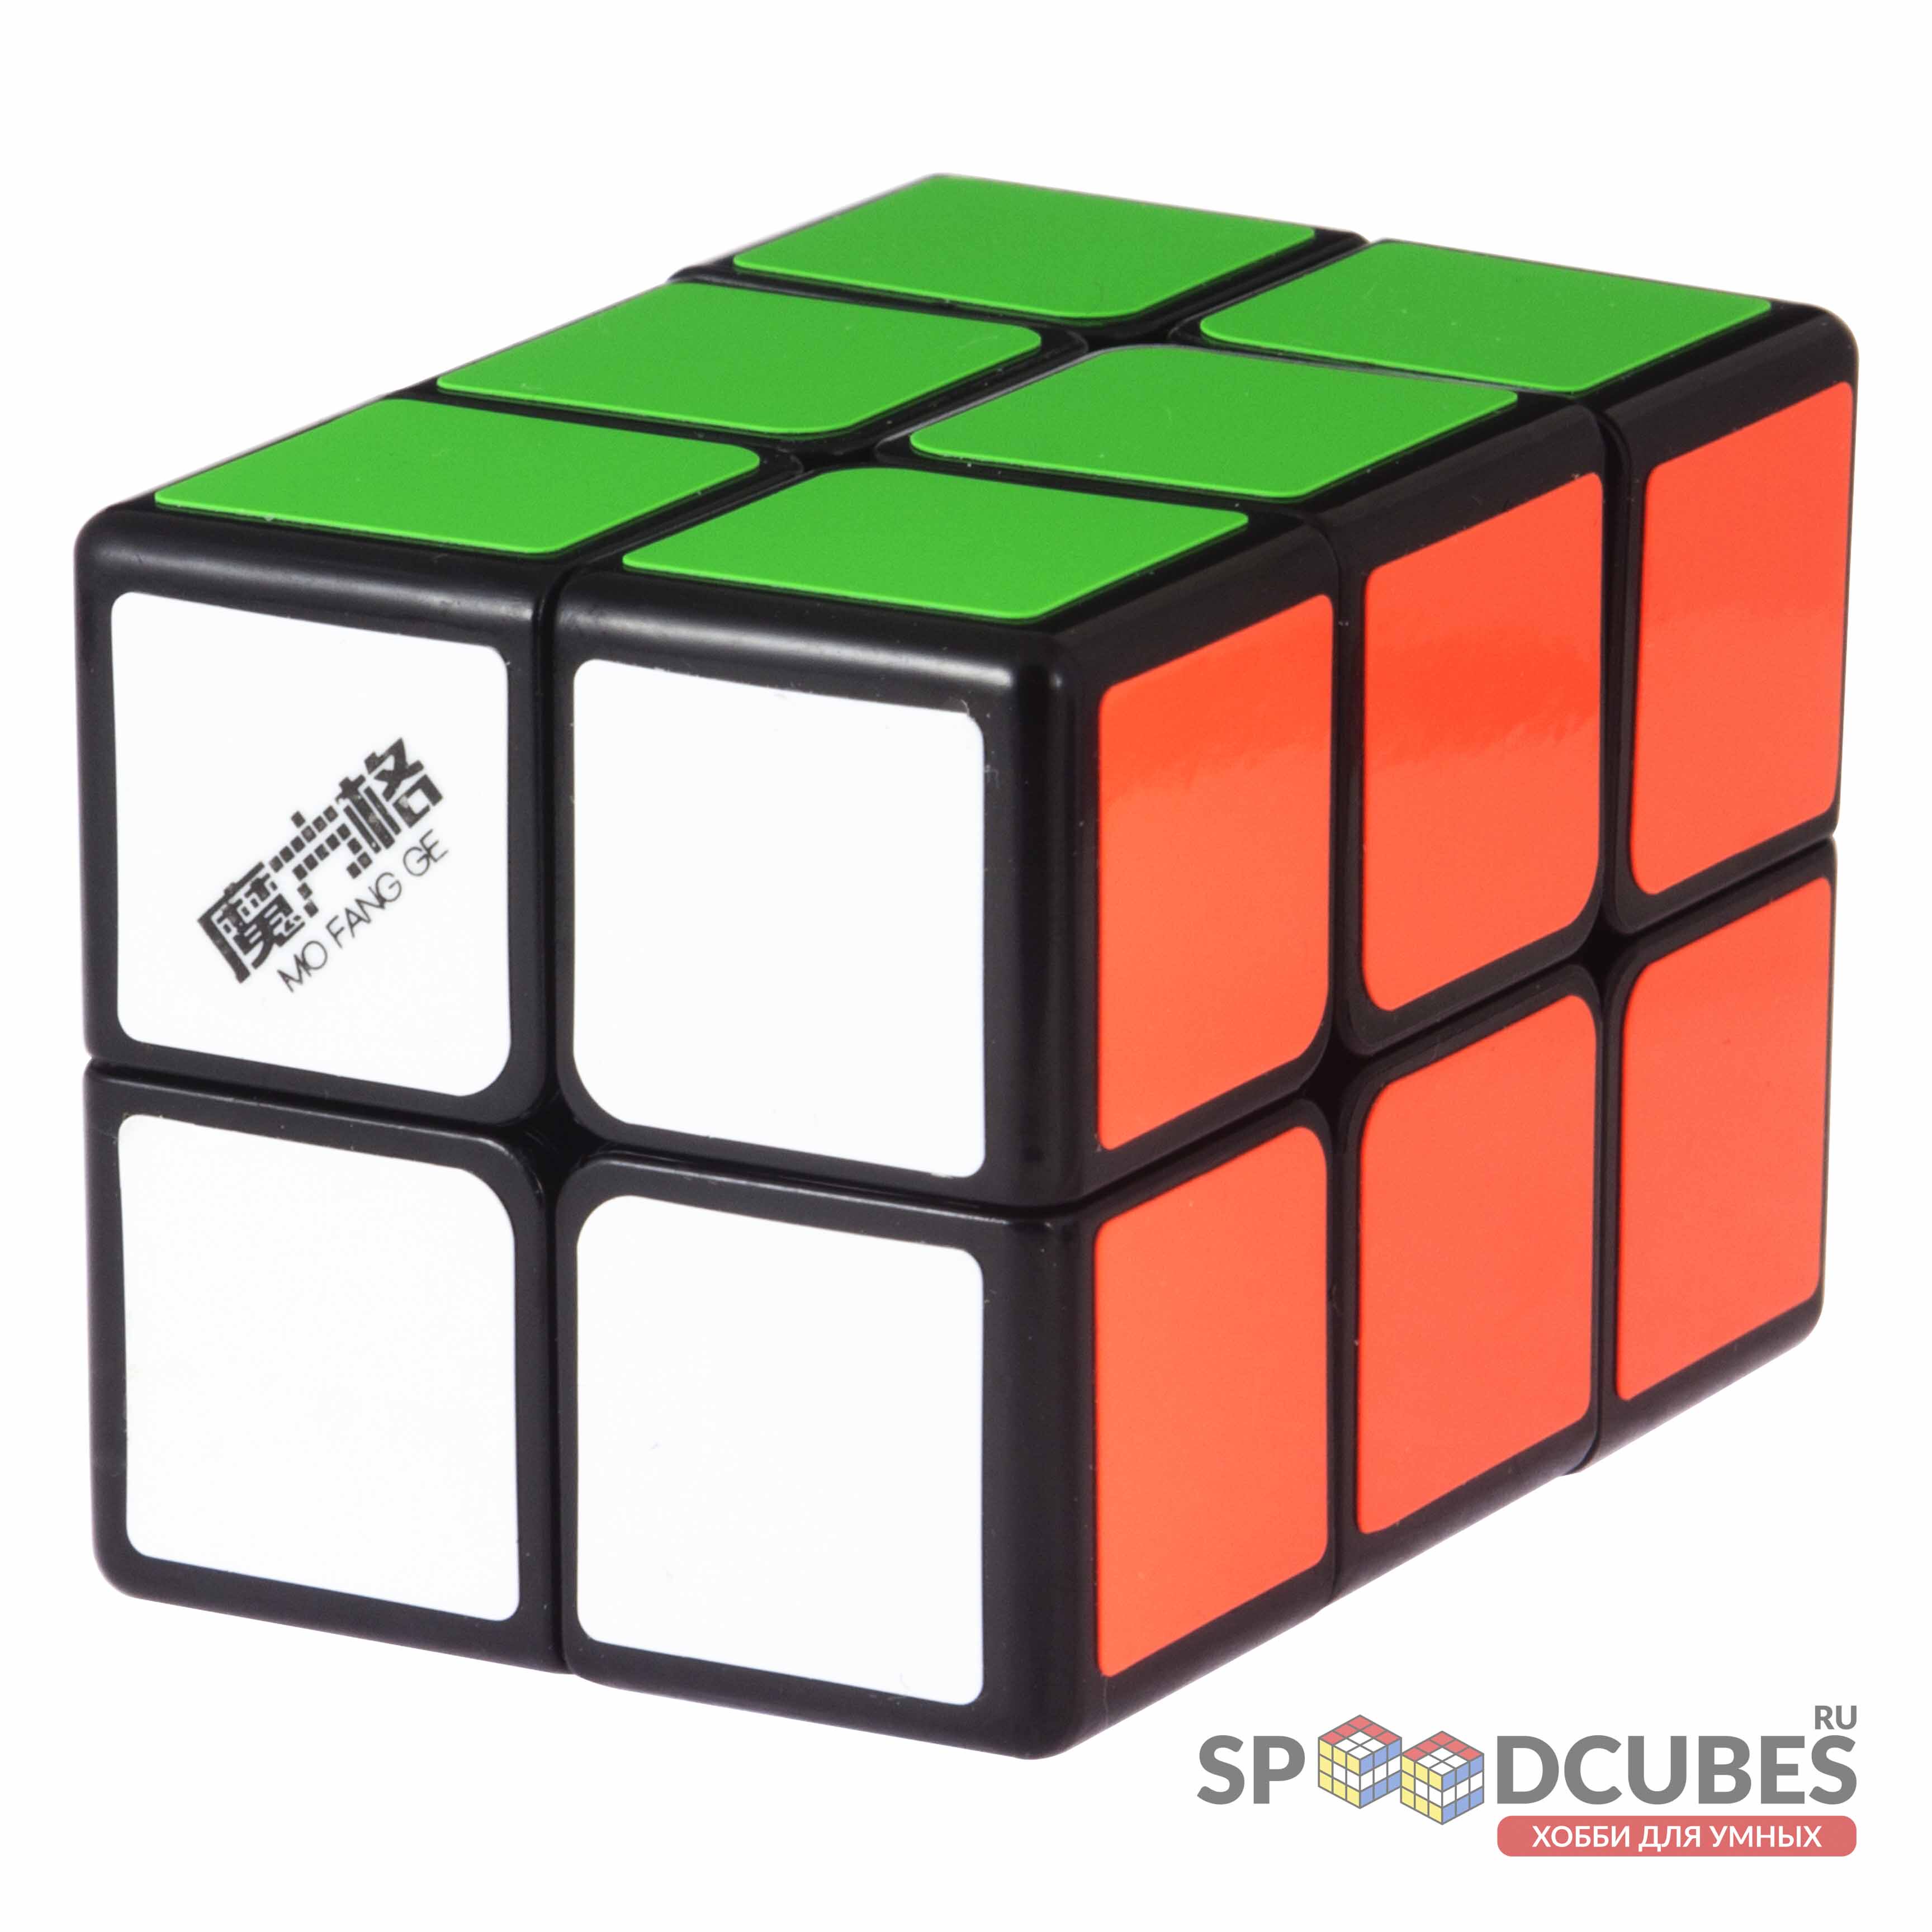 QiYi (MoFangGe) 2x2x3 Cube